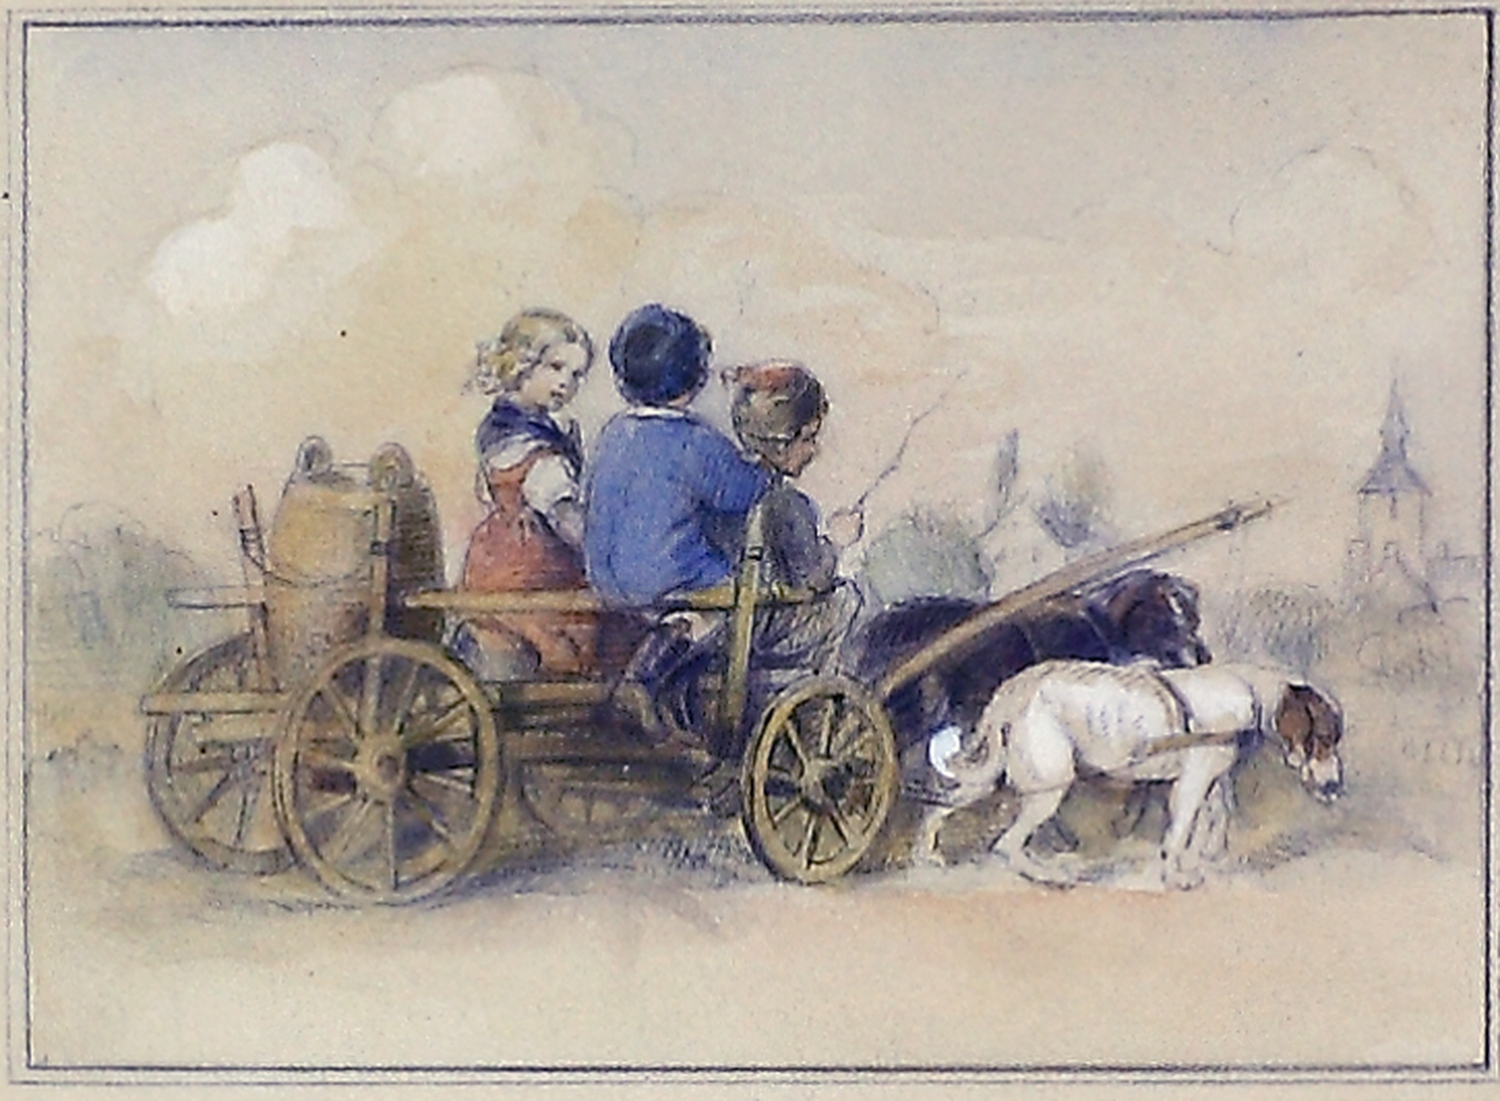 Auktionshaus Quentin Berlin  Zeichnungen Richter  Ludwig  Drei Kinder auf einem von Hunden gezogenenen Leiterwagen vor Dorfkulisse.